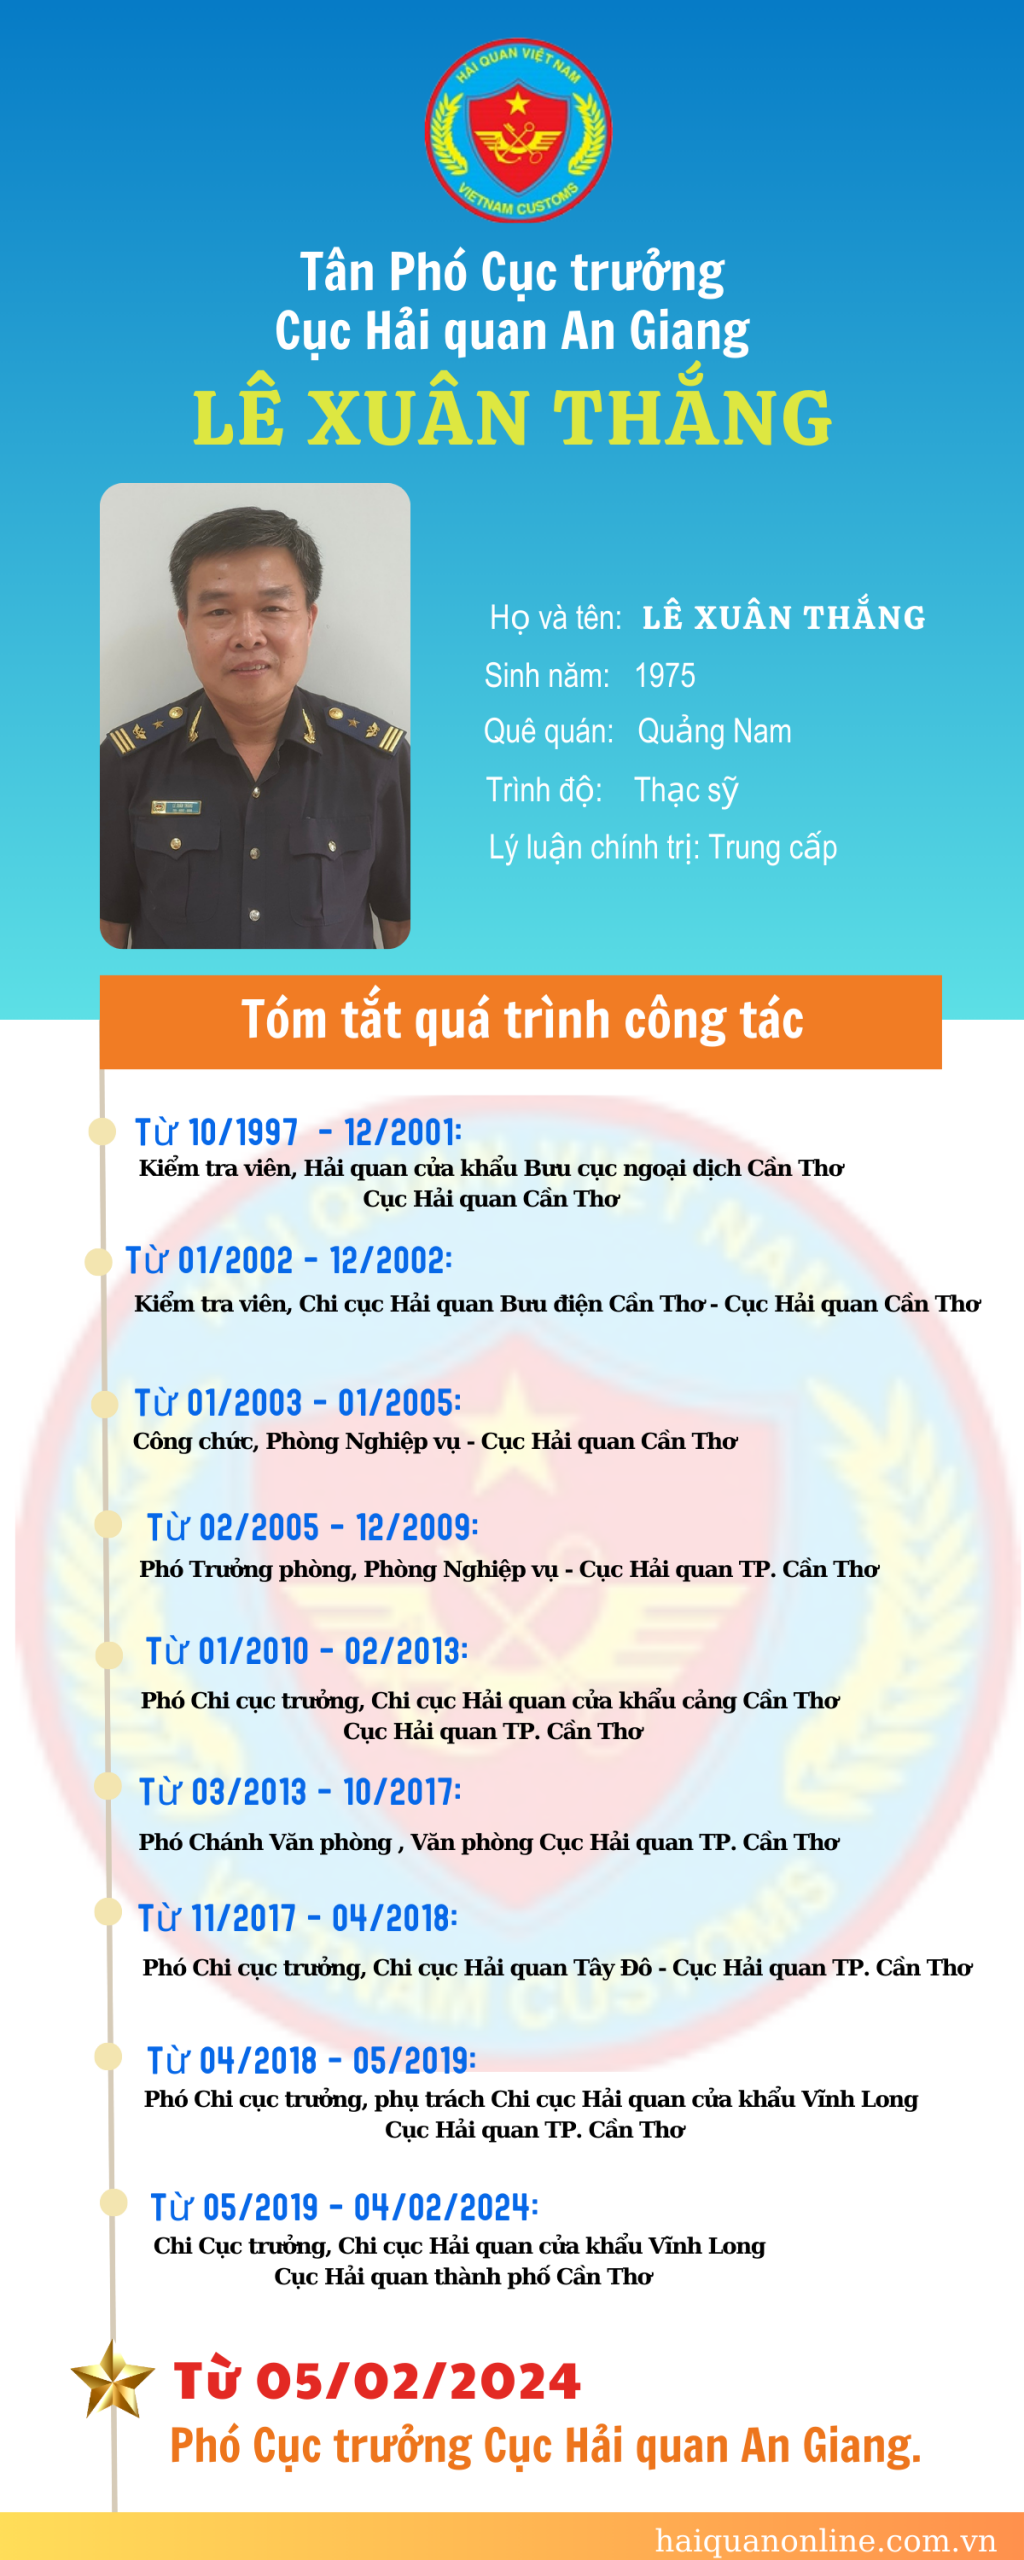 Infographic: Quá trình công tác của tân Phó Cục trưởng Cục Hải quan An Giang Lê Xuân Thắng